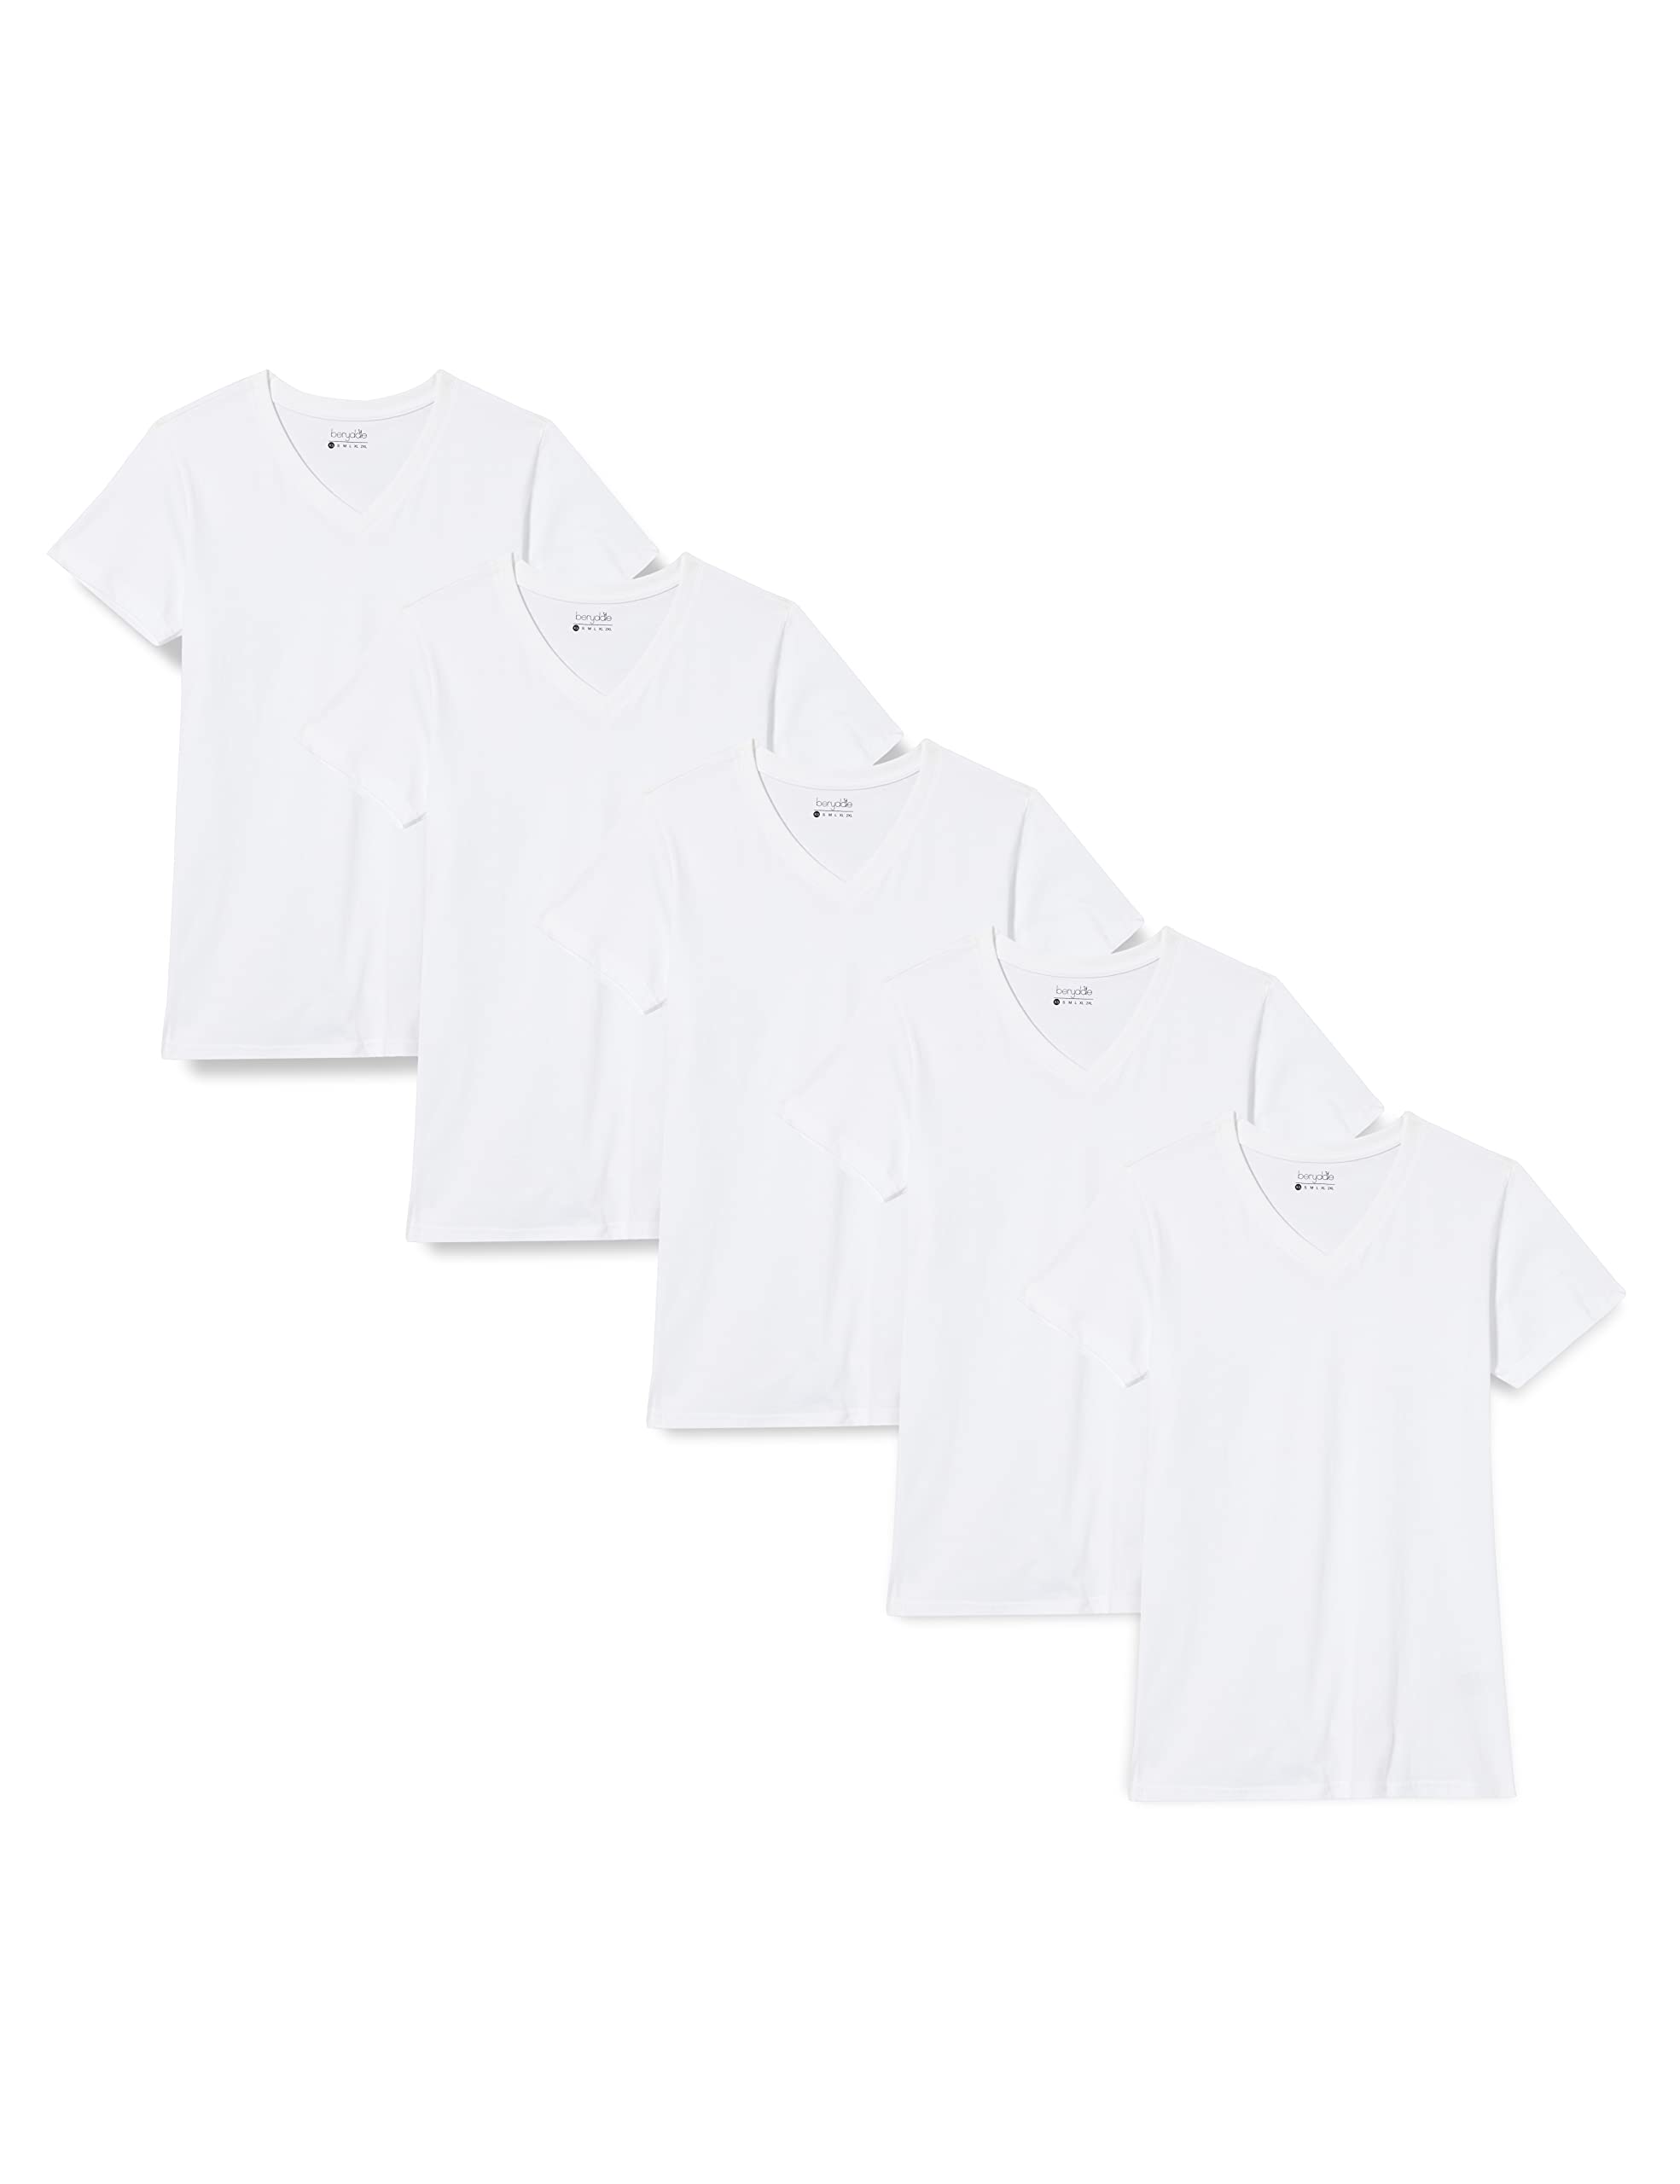 berydale Damen T-Shirt Bd158, Weiß - 5er Pack, XL